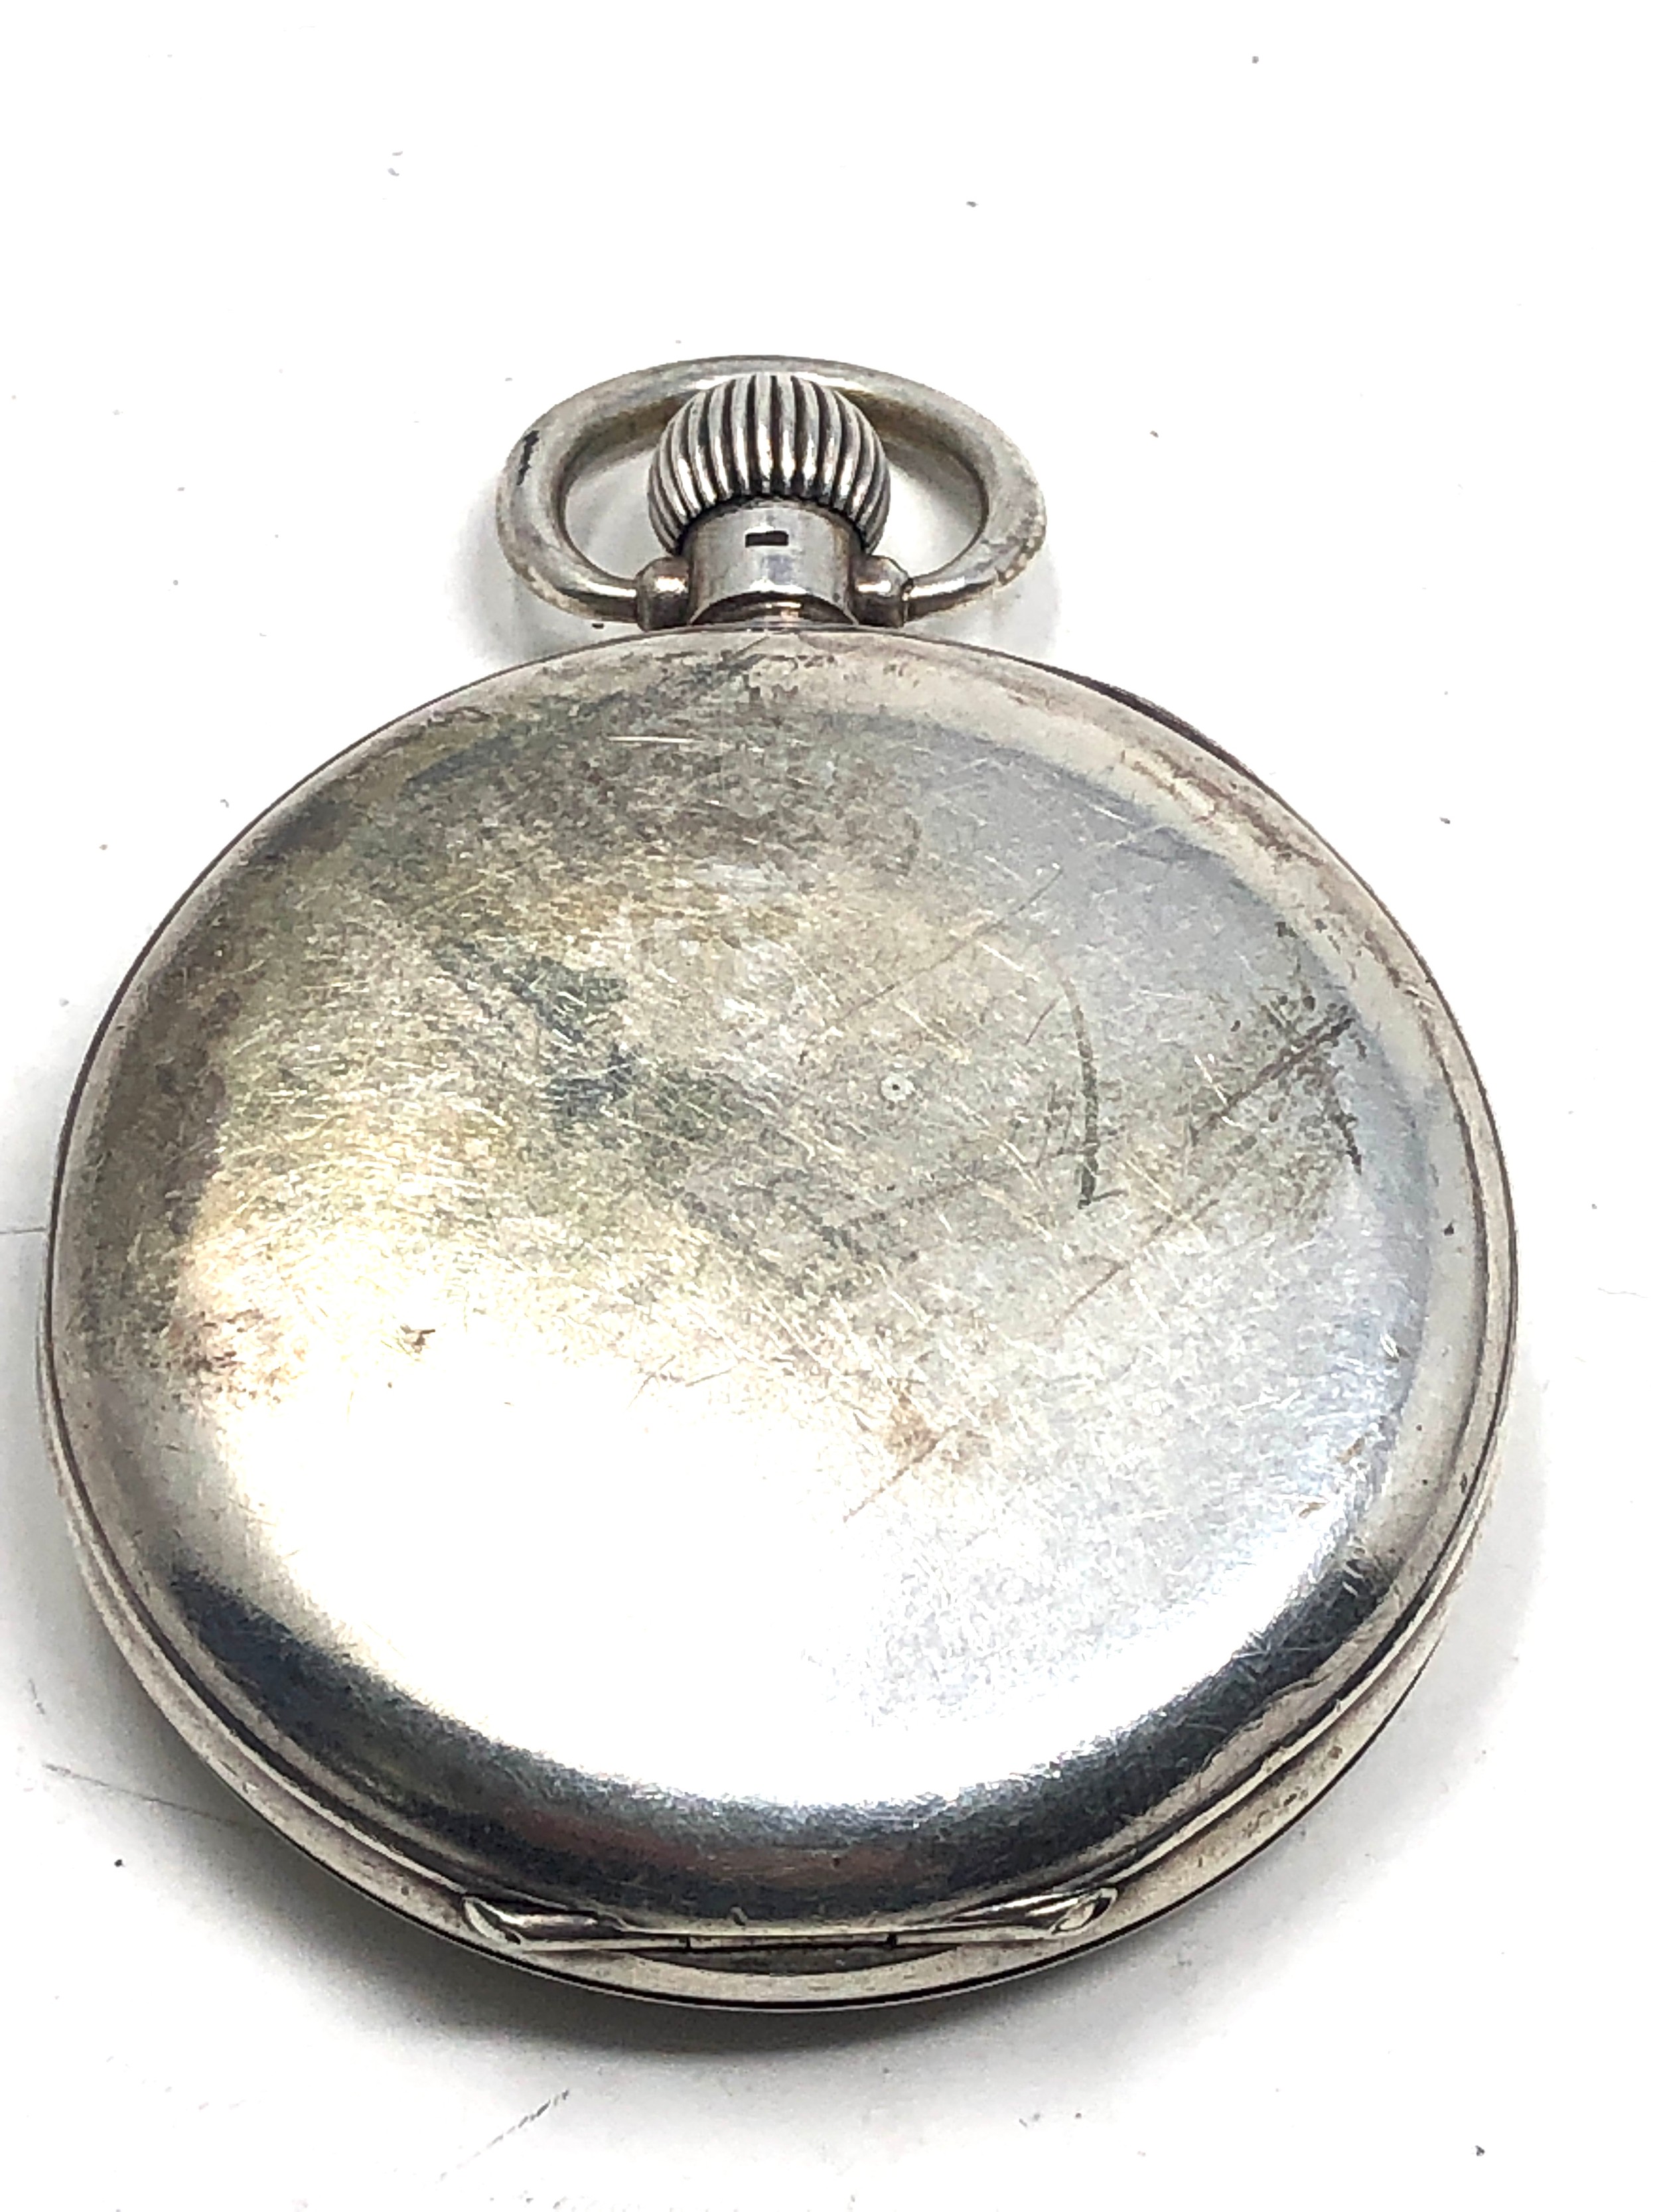 Antique silver waltham pocket watch the watch winds and ticks - Bild 2 aus 4